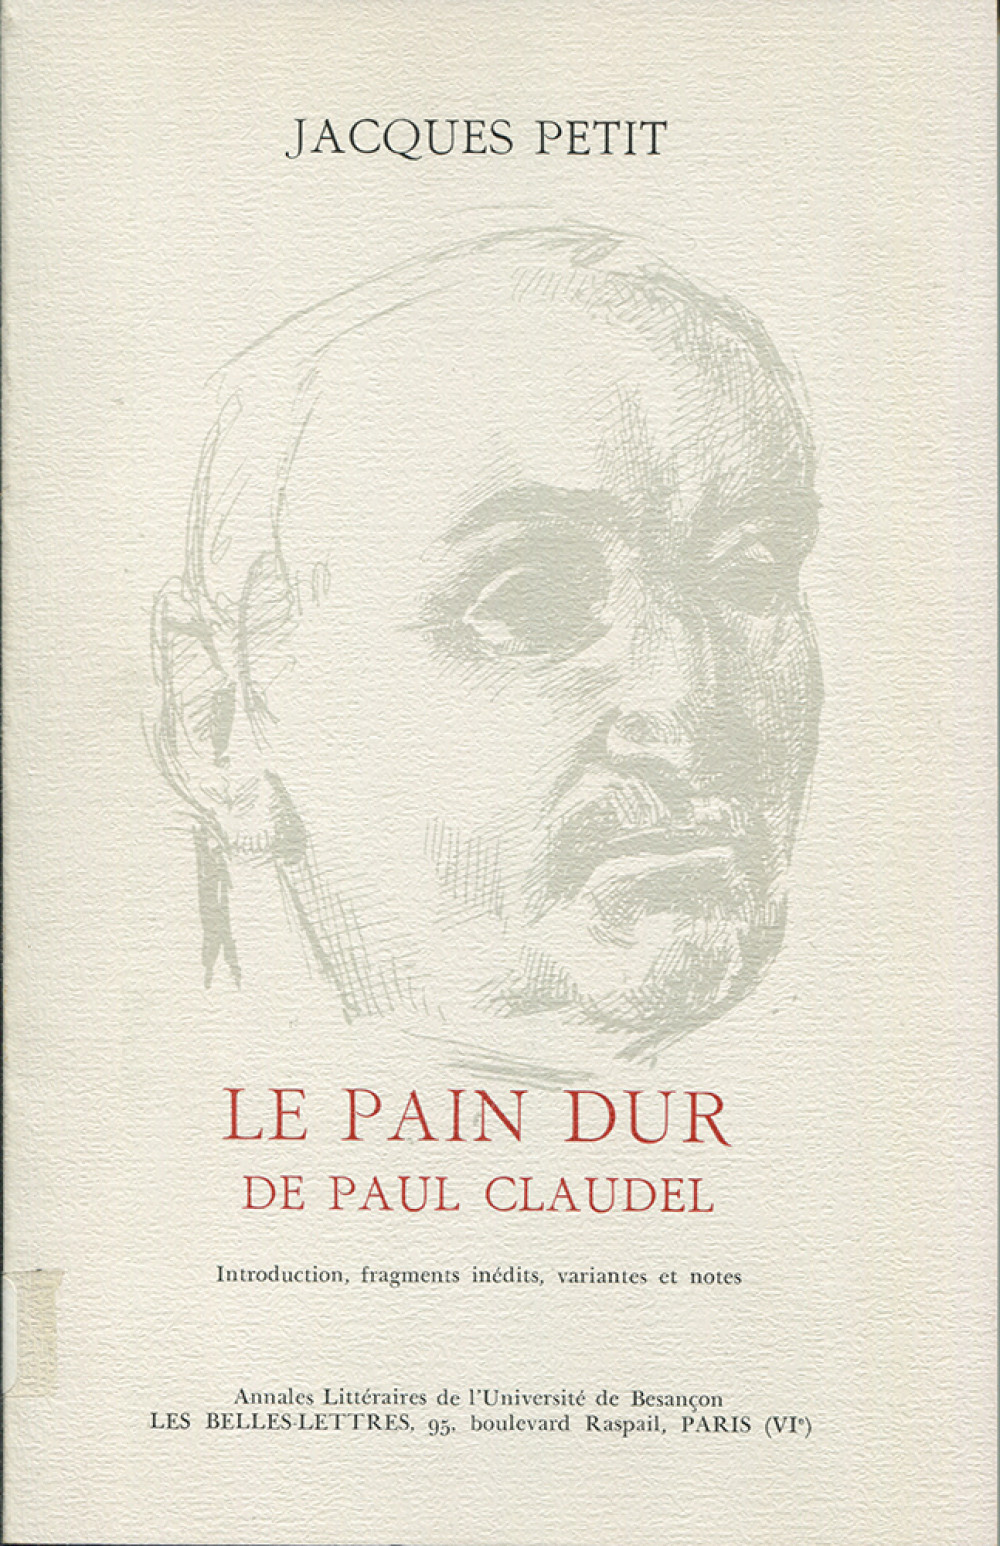 Le Pain dur de Paul Claudel